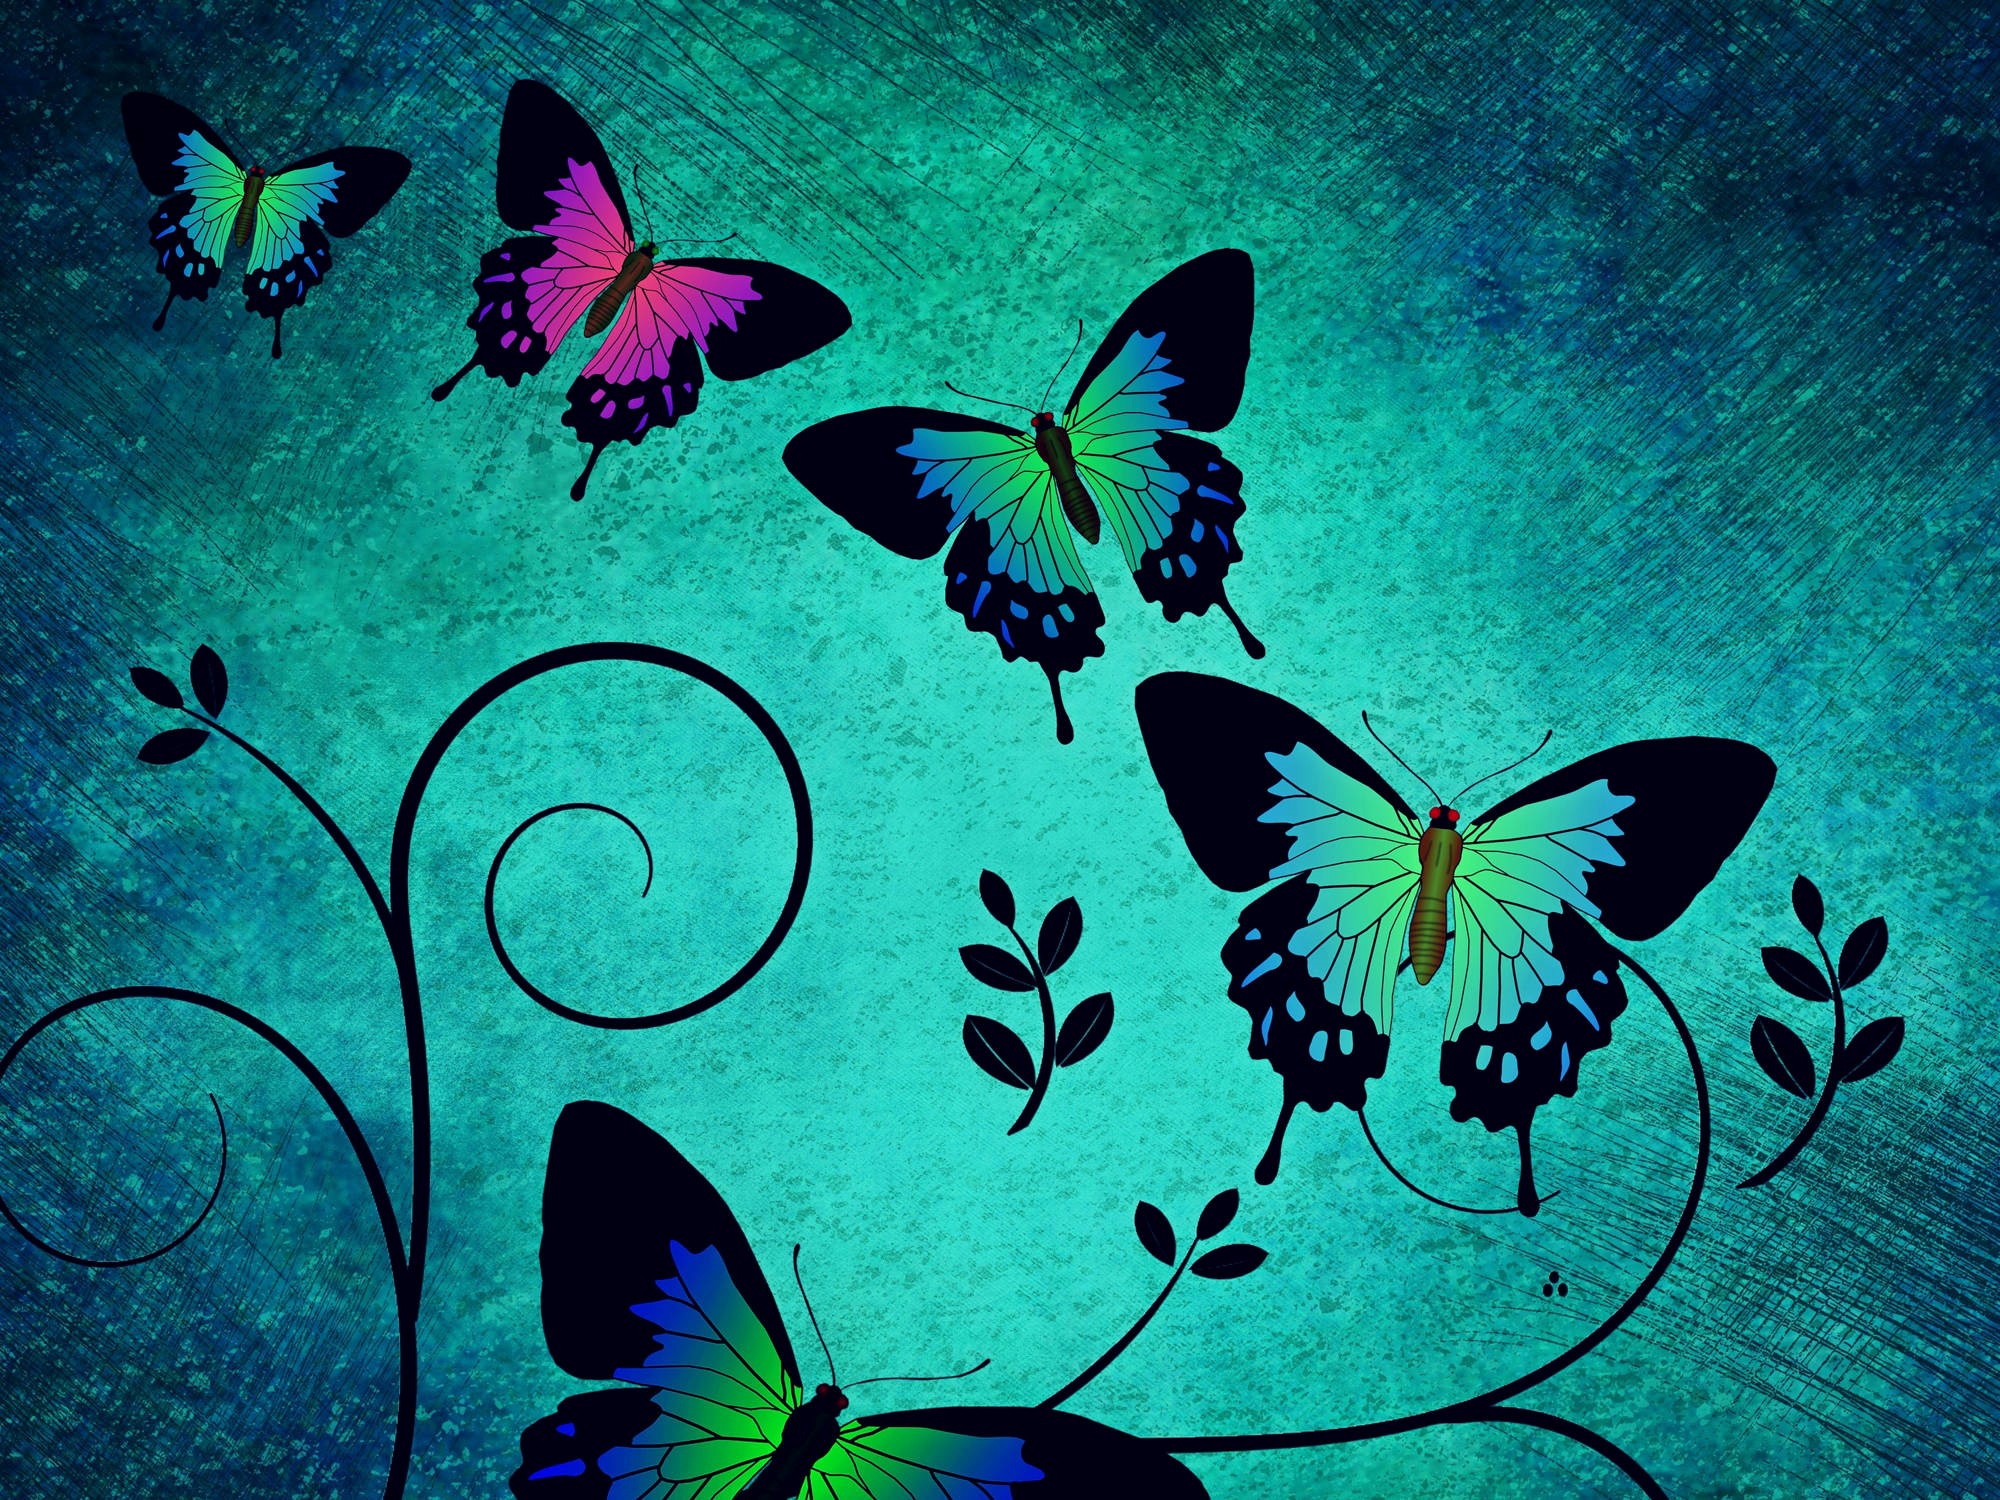 farfalla live wallpaper,la farfalla,falene e farfalle,insetto,blu,turchese